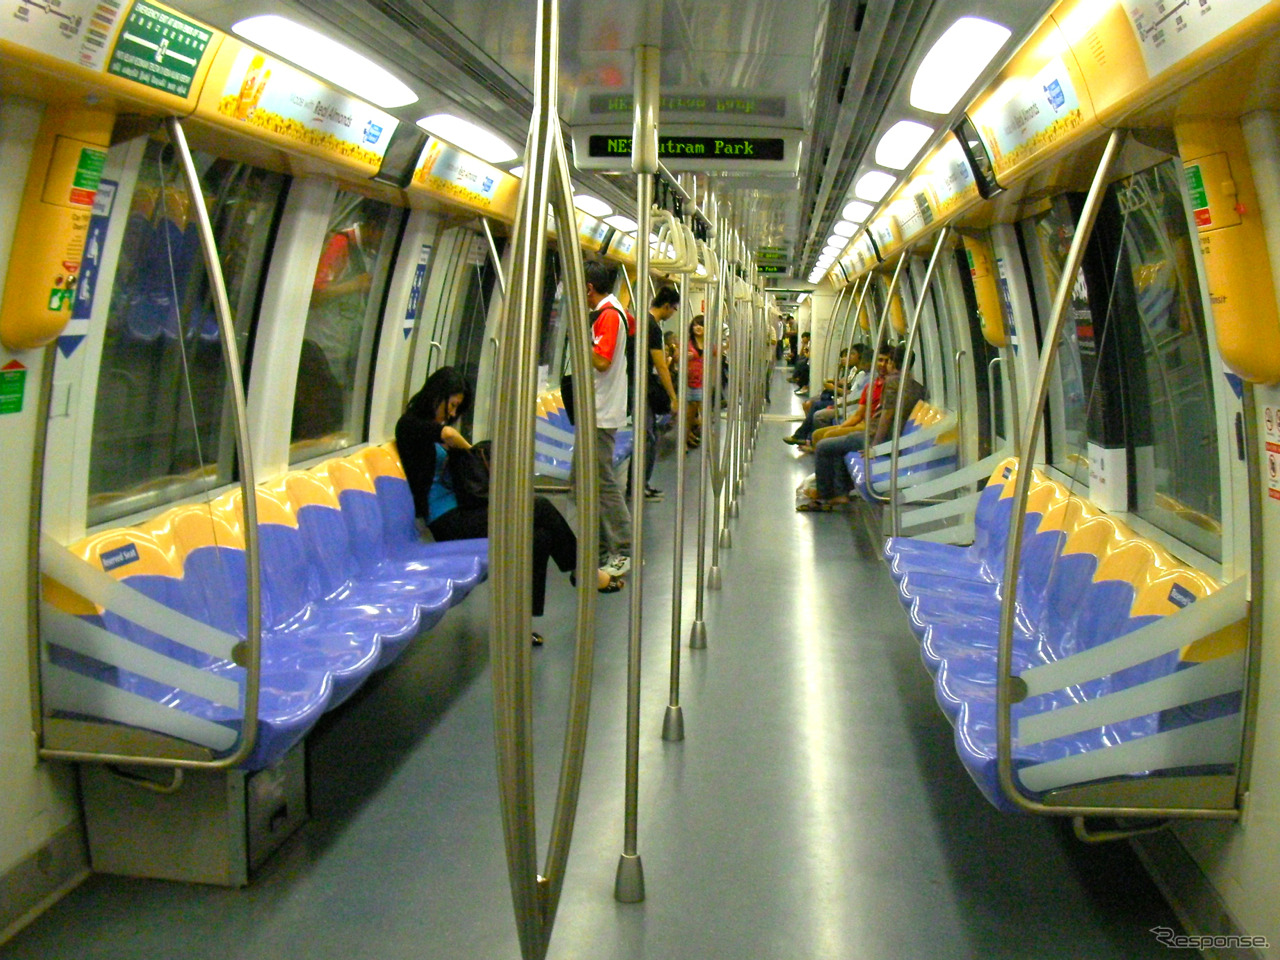 海外では無線式制御システムの普及が進んでいる。新交通システムを除く一般の鉄道としては世界で最も早く2003年にCBTCを導入し、完全無人運転を行っているシンガポールのMRT北東線の車内